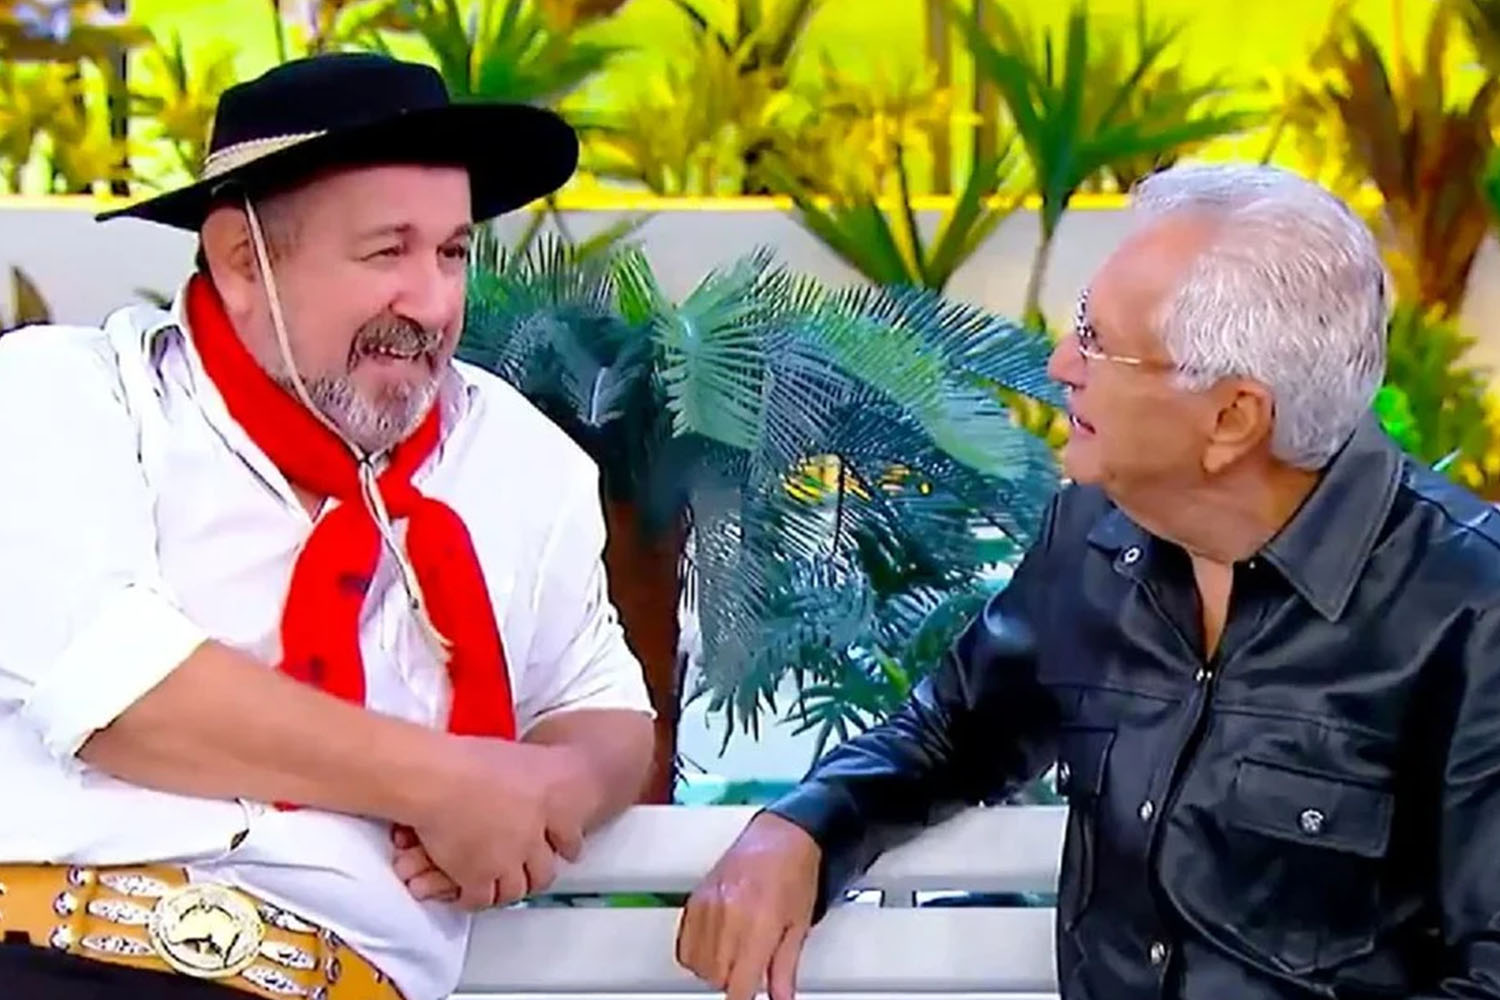 Morre aos 67 anos o humorista Beto Gabriel, o 'Gaúcho' de 'A Praça é Nossa'